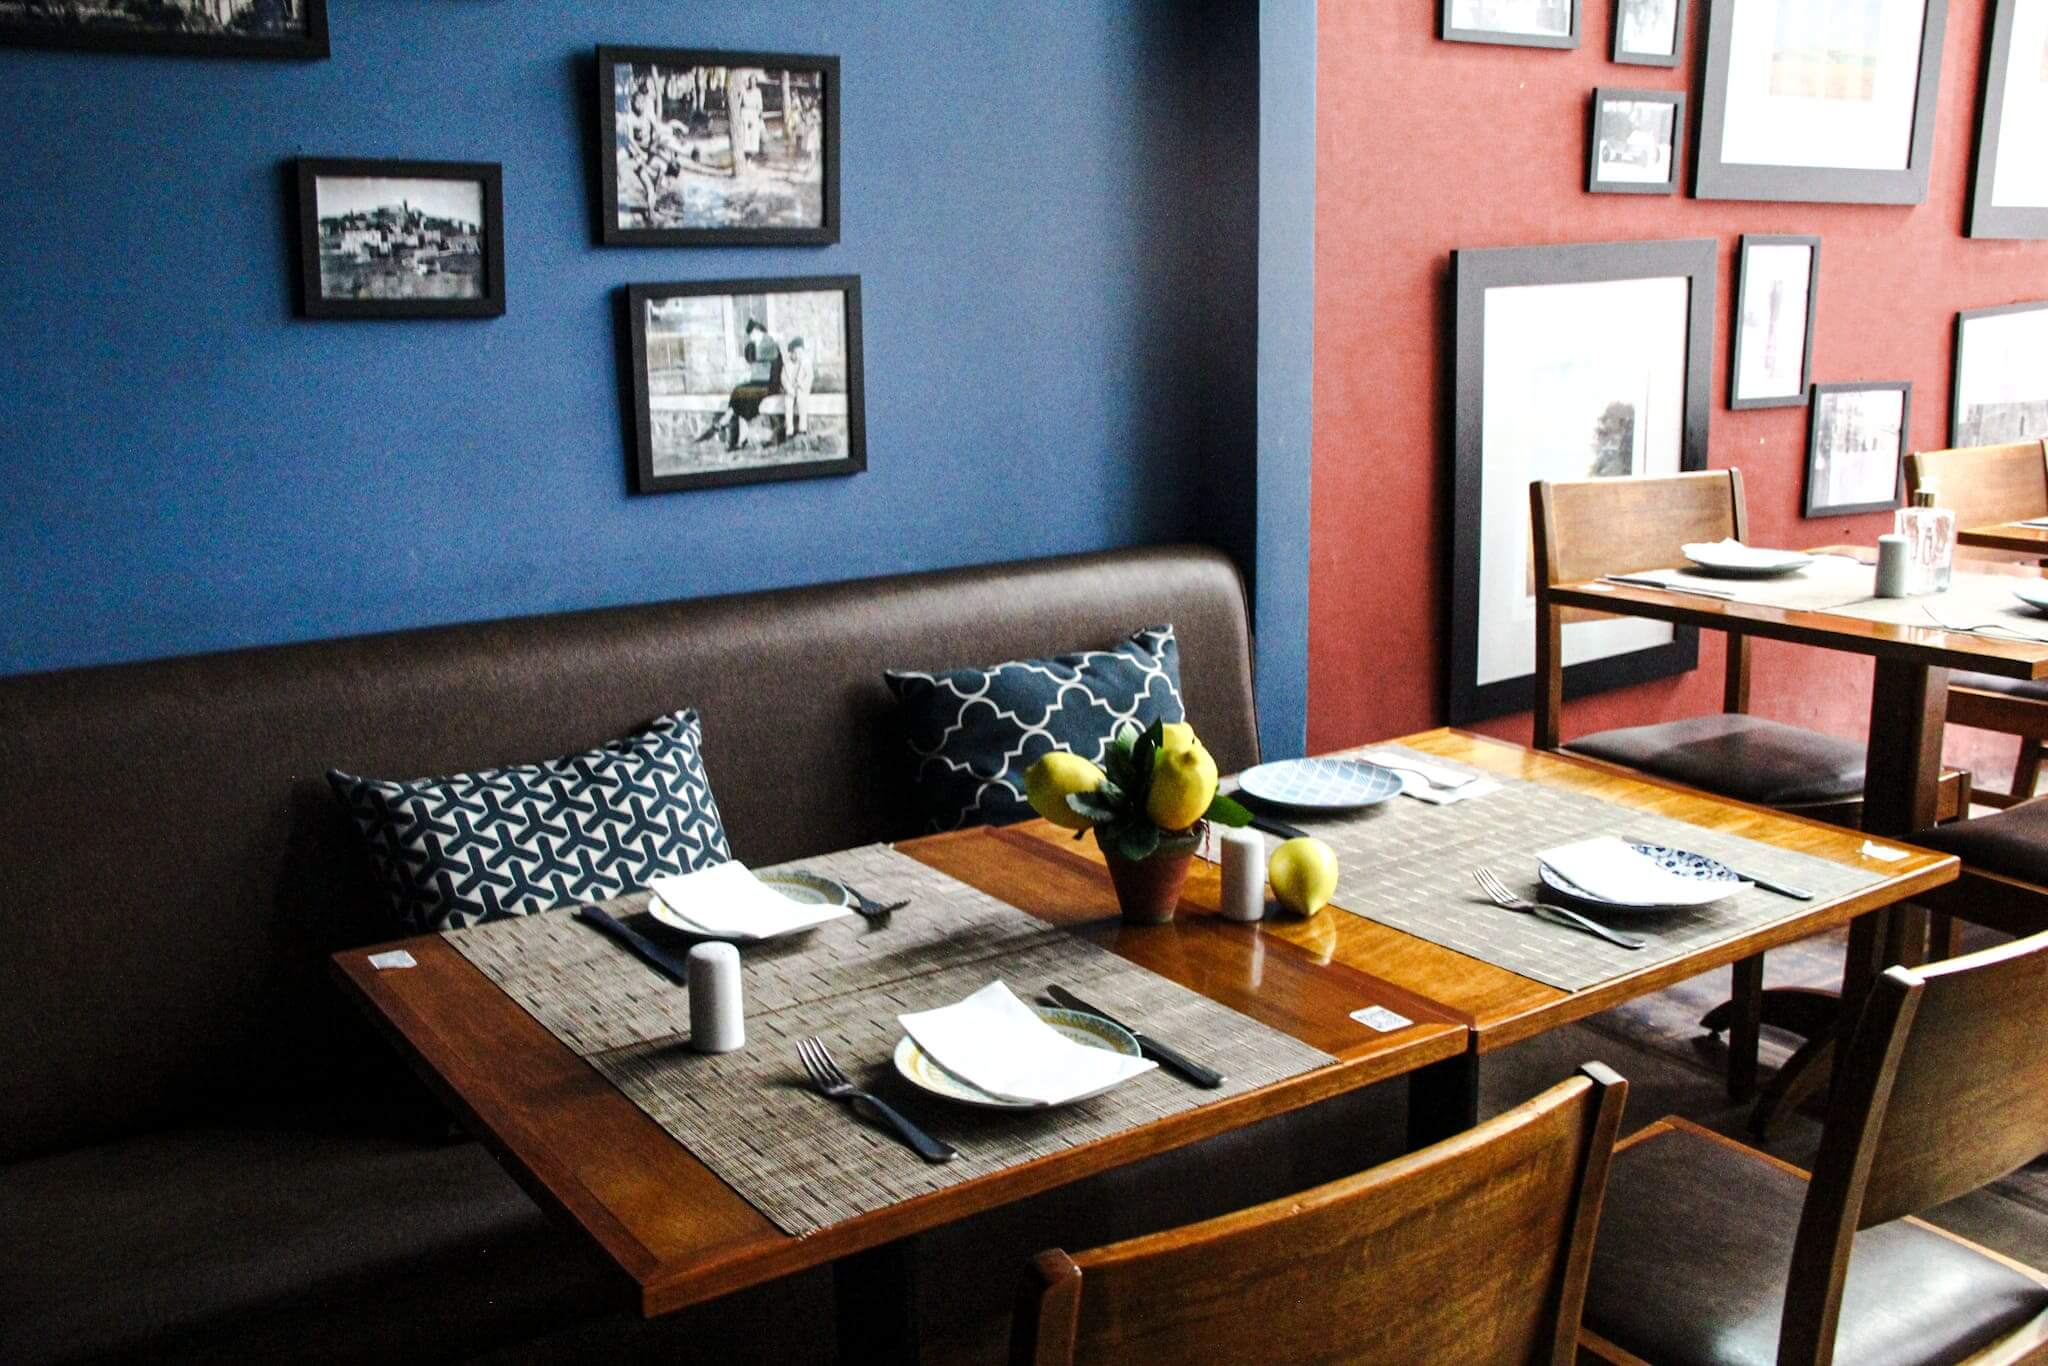 Foto mostra o ambiente interno do restaurante, com a parede sendo metade vermelha/metade azul. Sofá de couro com almofadas azuis encostados na parede azul de frente com mesas de madeira. Nas paredes há vários quadros em preto e branco.